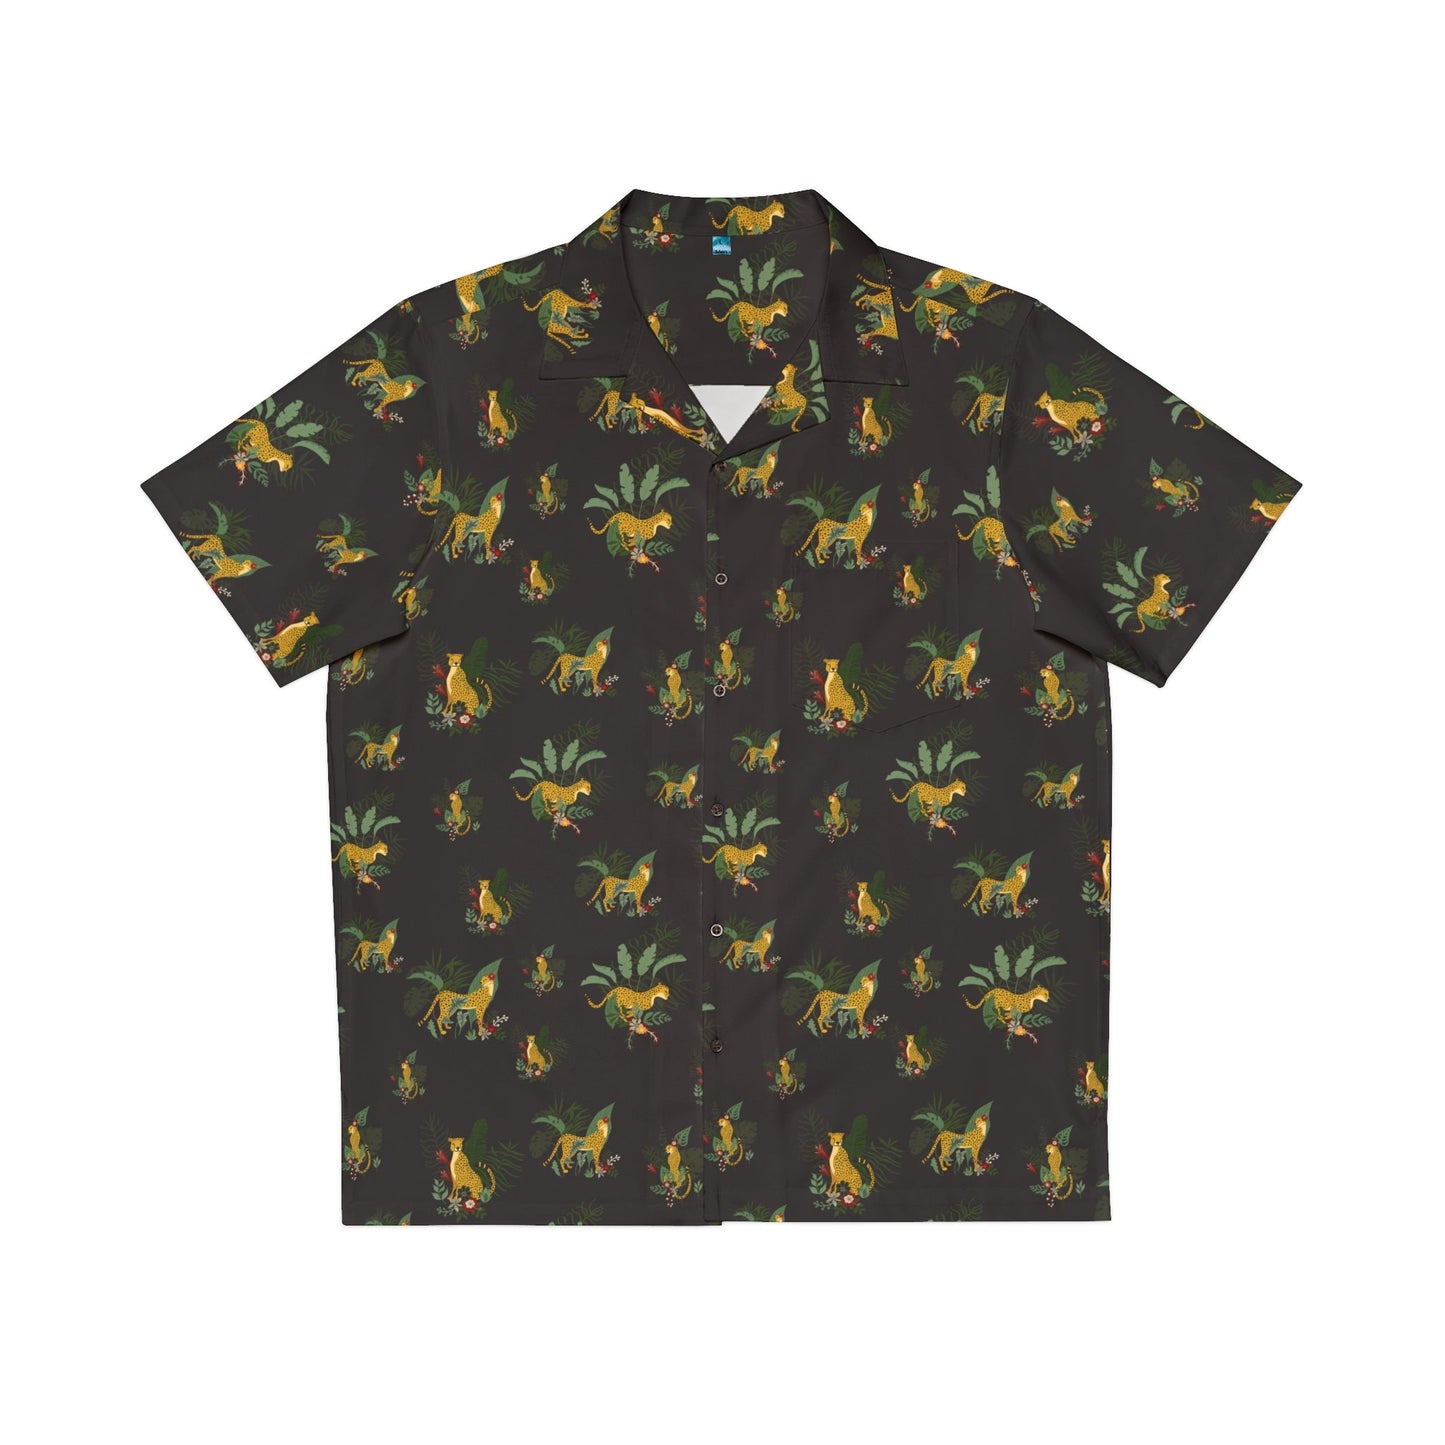 Tropical Wild Cat Men's Hawaiian Shirt - All Over Prints - Epileptic Al’s Shop